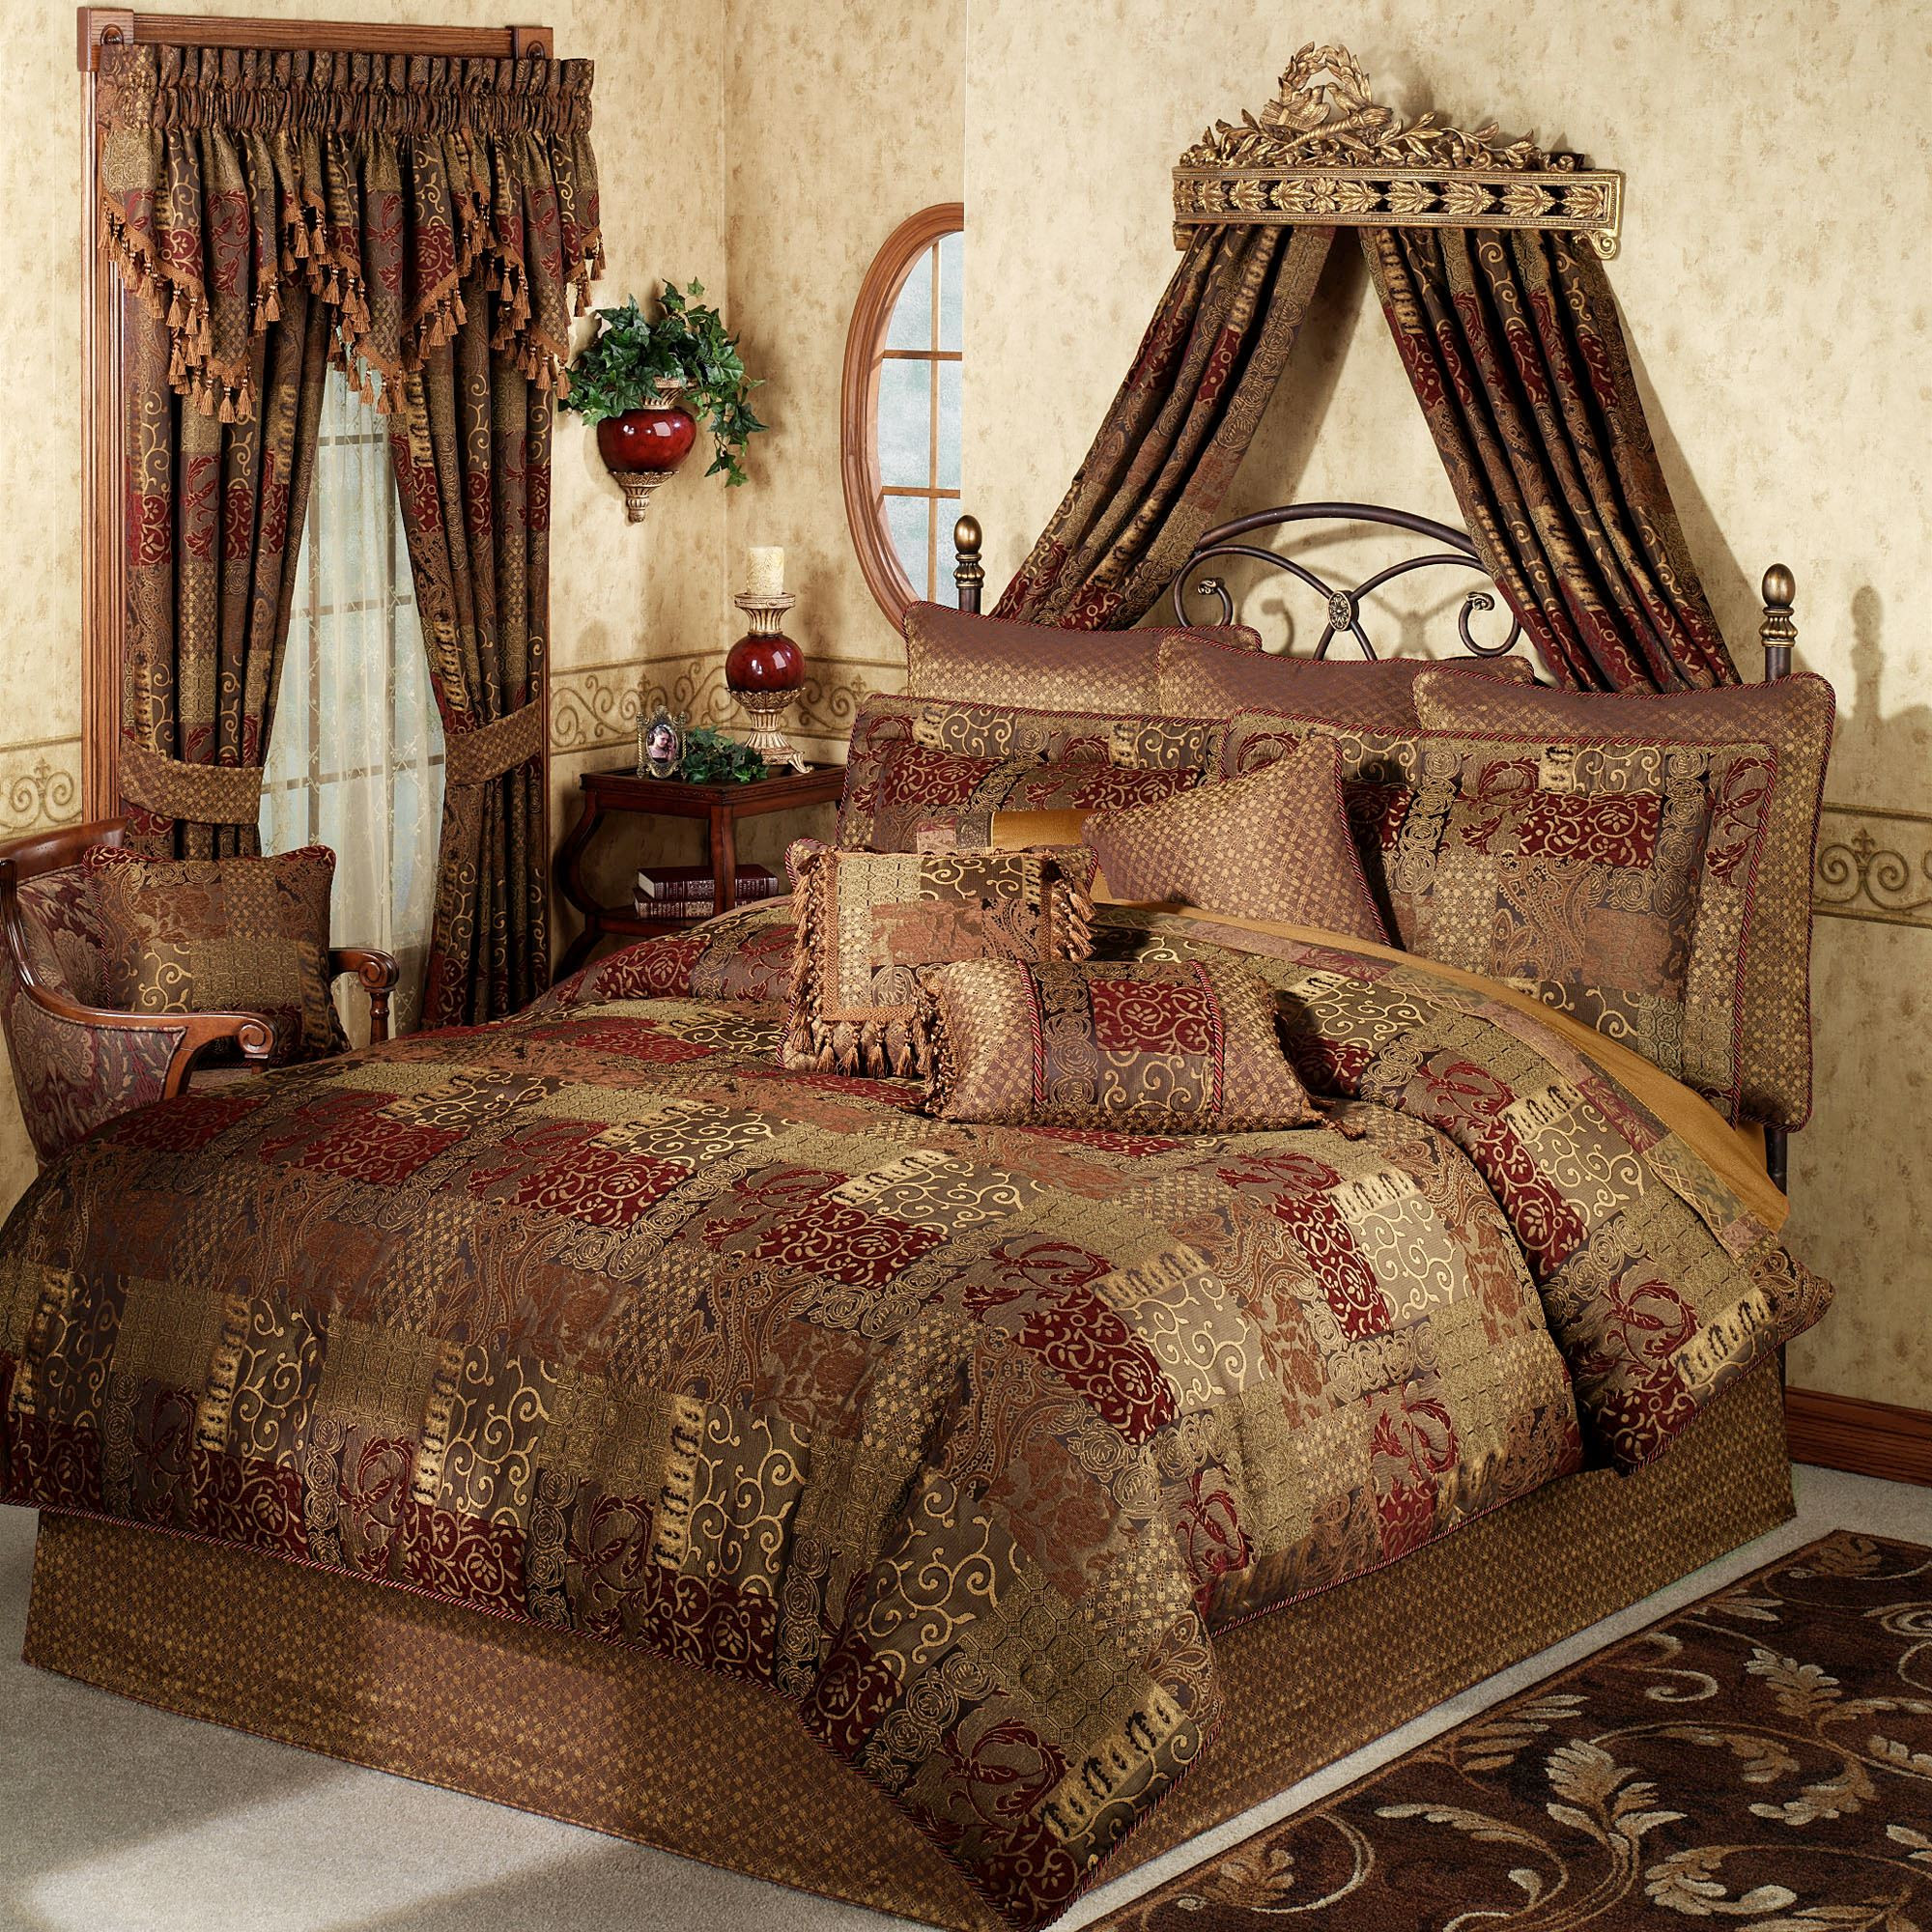 Master Bedroom Bedding Sets
 Galleria forter Bedding by Croscill